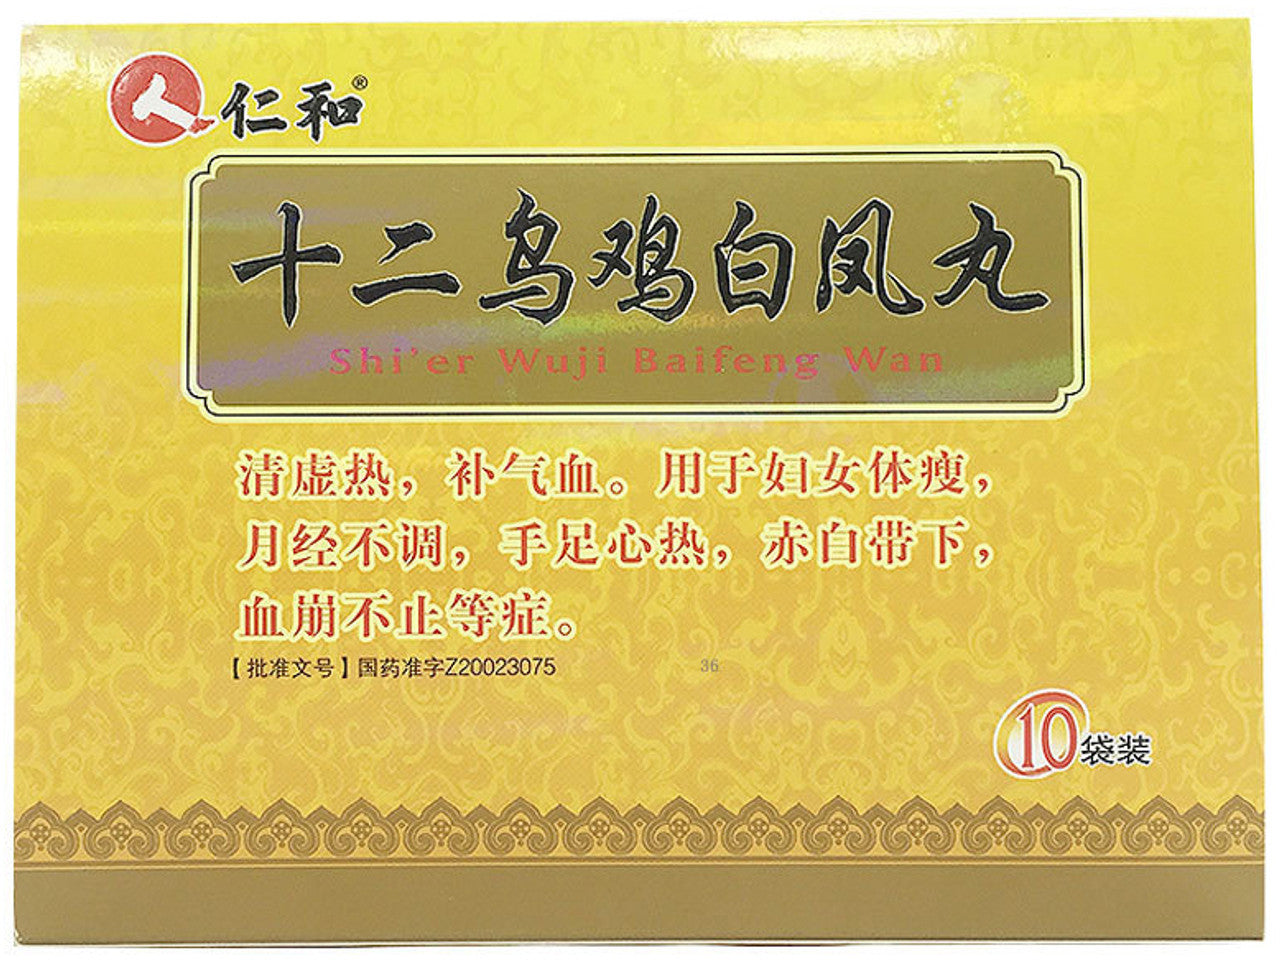 China Herb. Brand Renhe. Shi'er Wuji Baifeng Wan or Twelve Wuji Baifeng Pills or Shi Er Wu Ji Bai Feng Wan for Irregular Menstruation